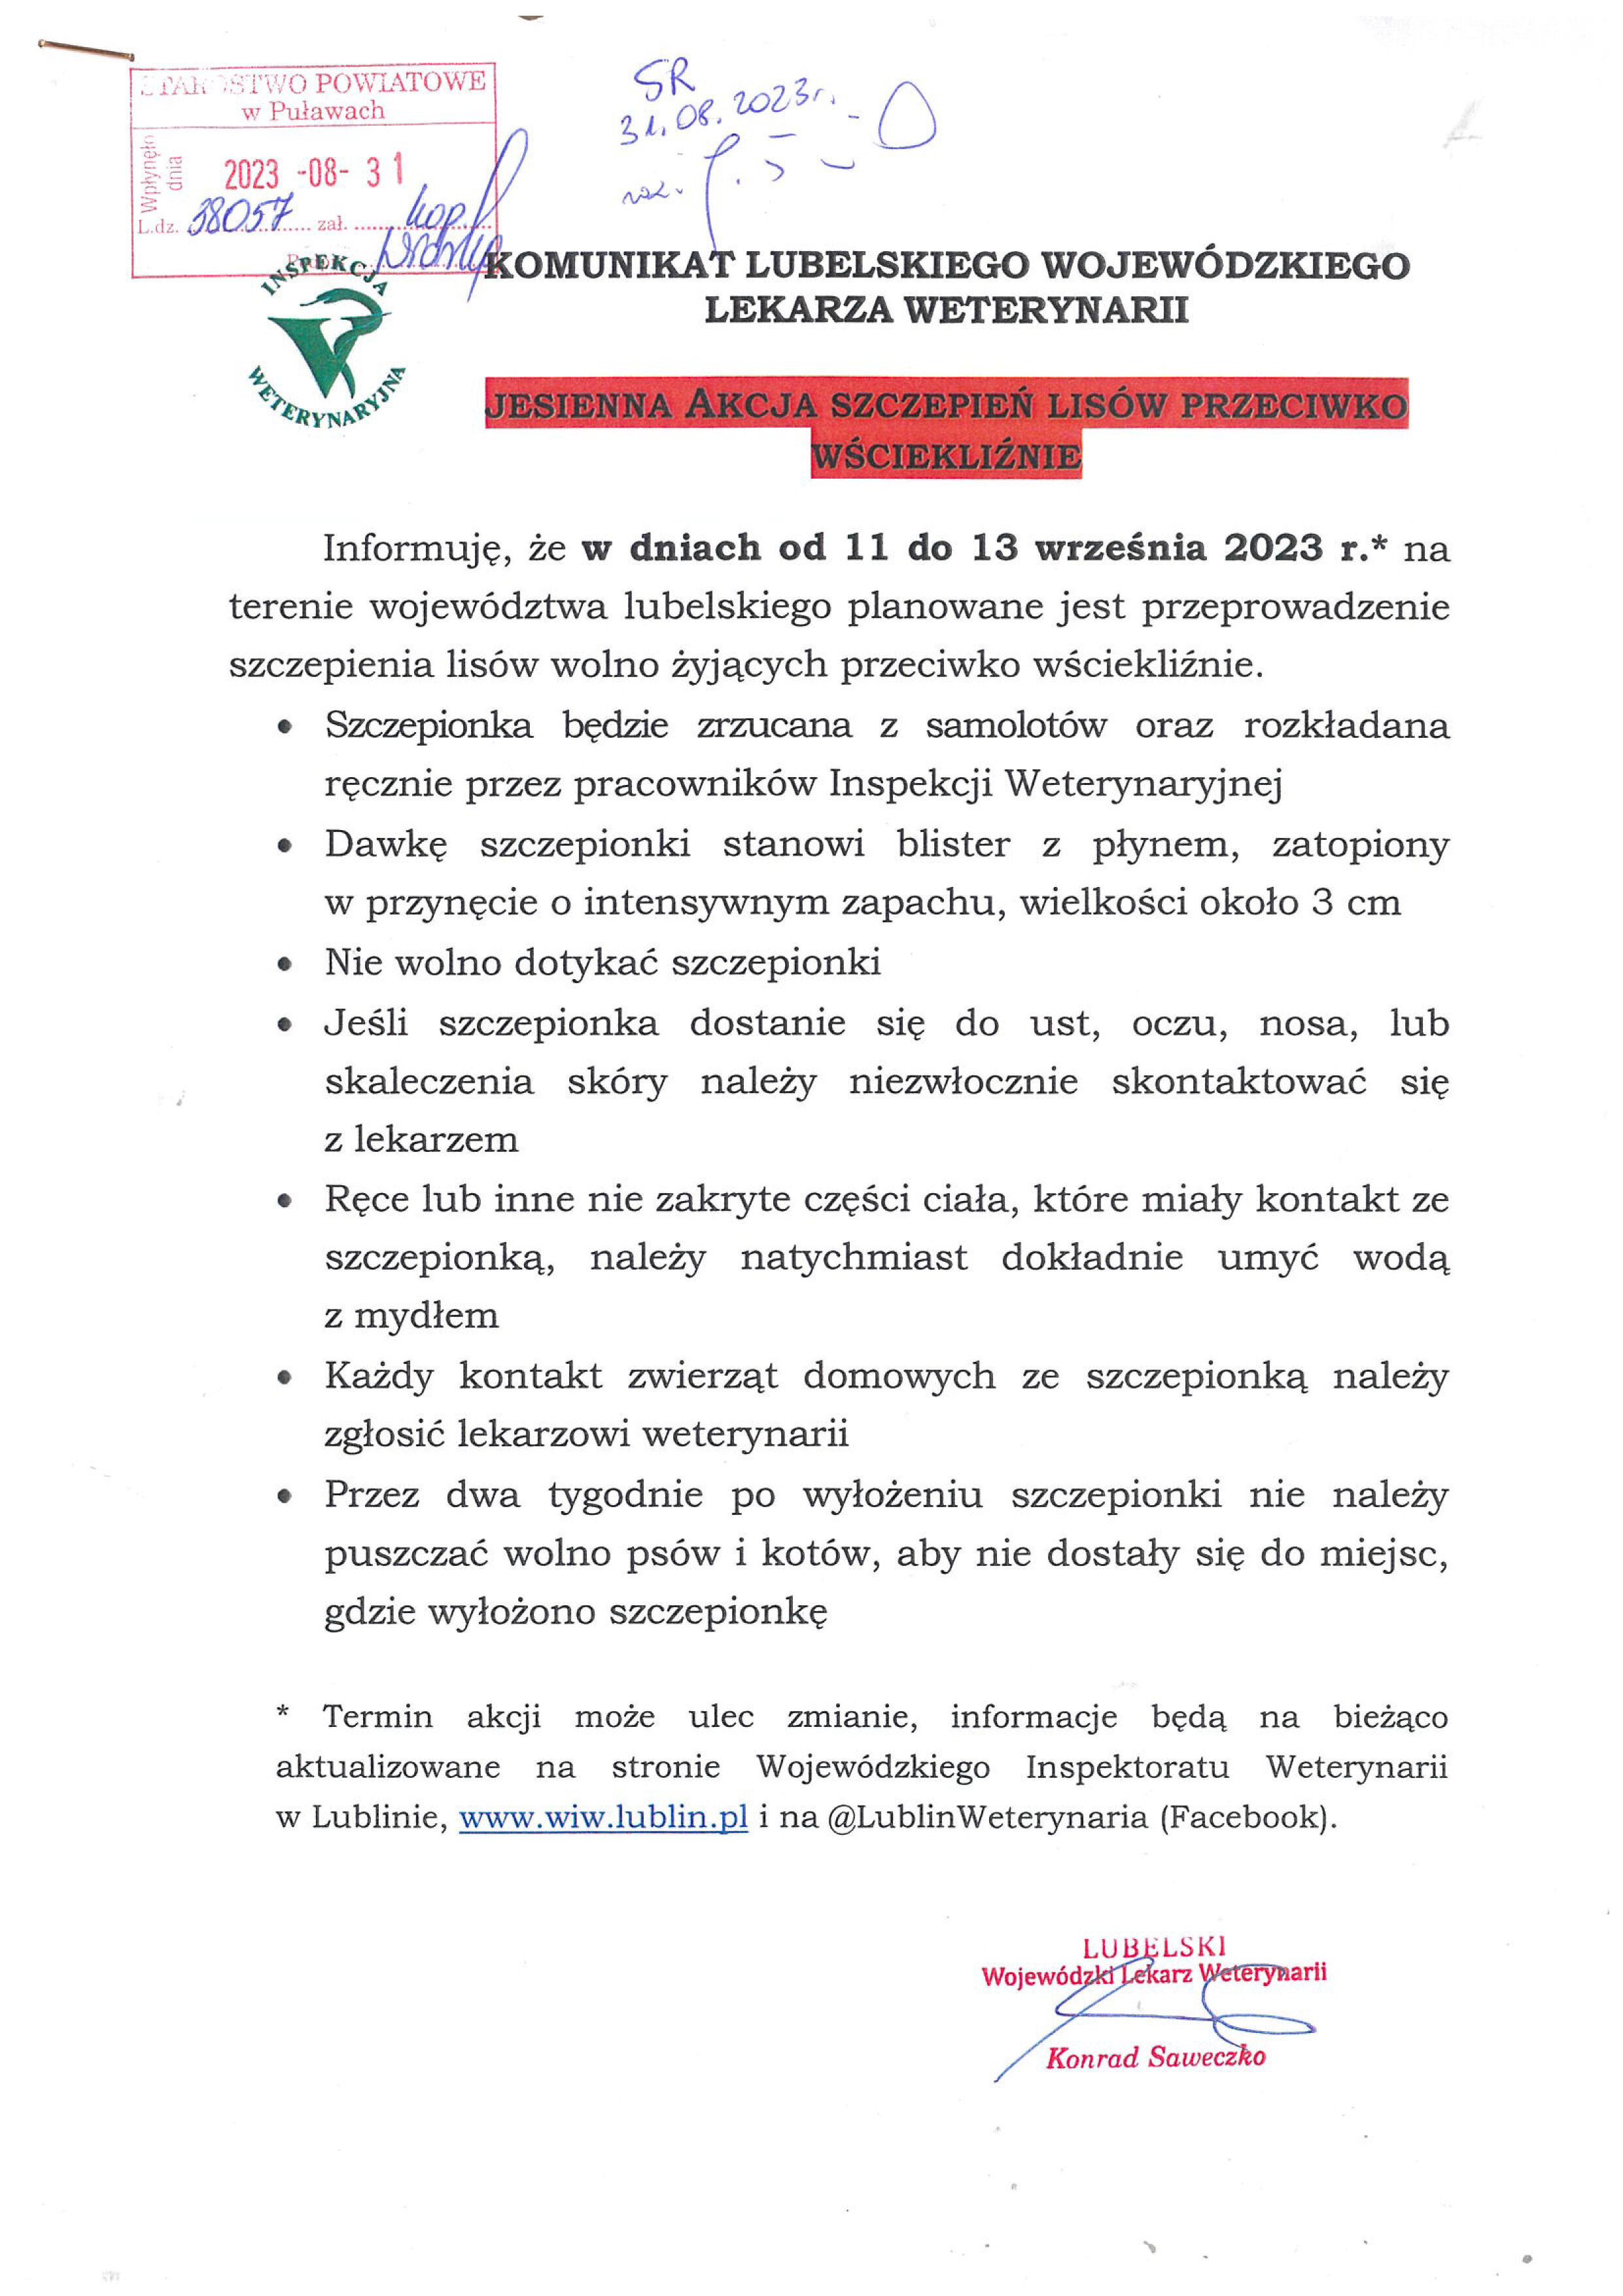 W dniach 11-13 września 2023 roku na terenie województwa lubelskiego planowane jest szczepienie lisów wolno żyjących przeciwko wściekliźnie - komunikat Lubelskiego Wojewódzkiego Lekarza Weterynarii.